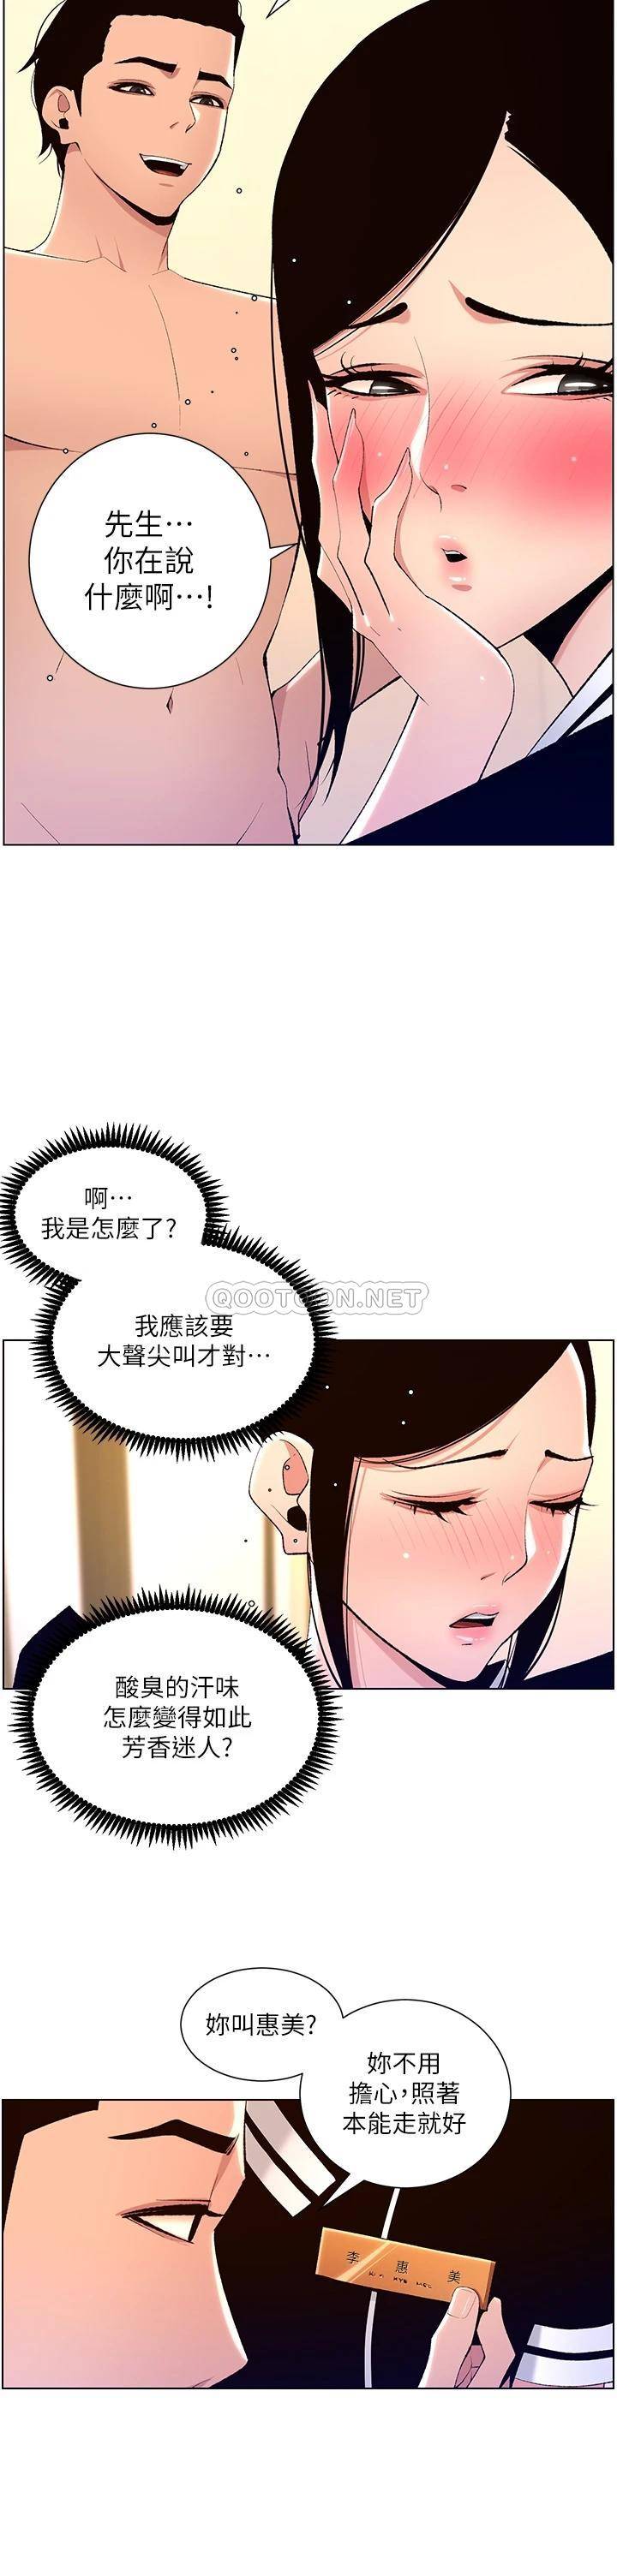 韩国污漫画 帝王App 第19话 人家的鲍鱼也很可口 30